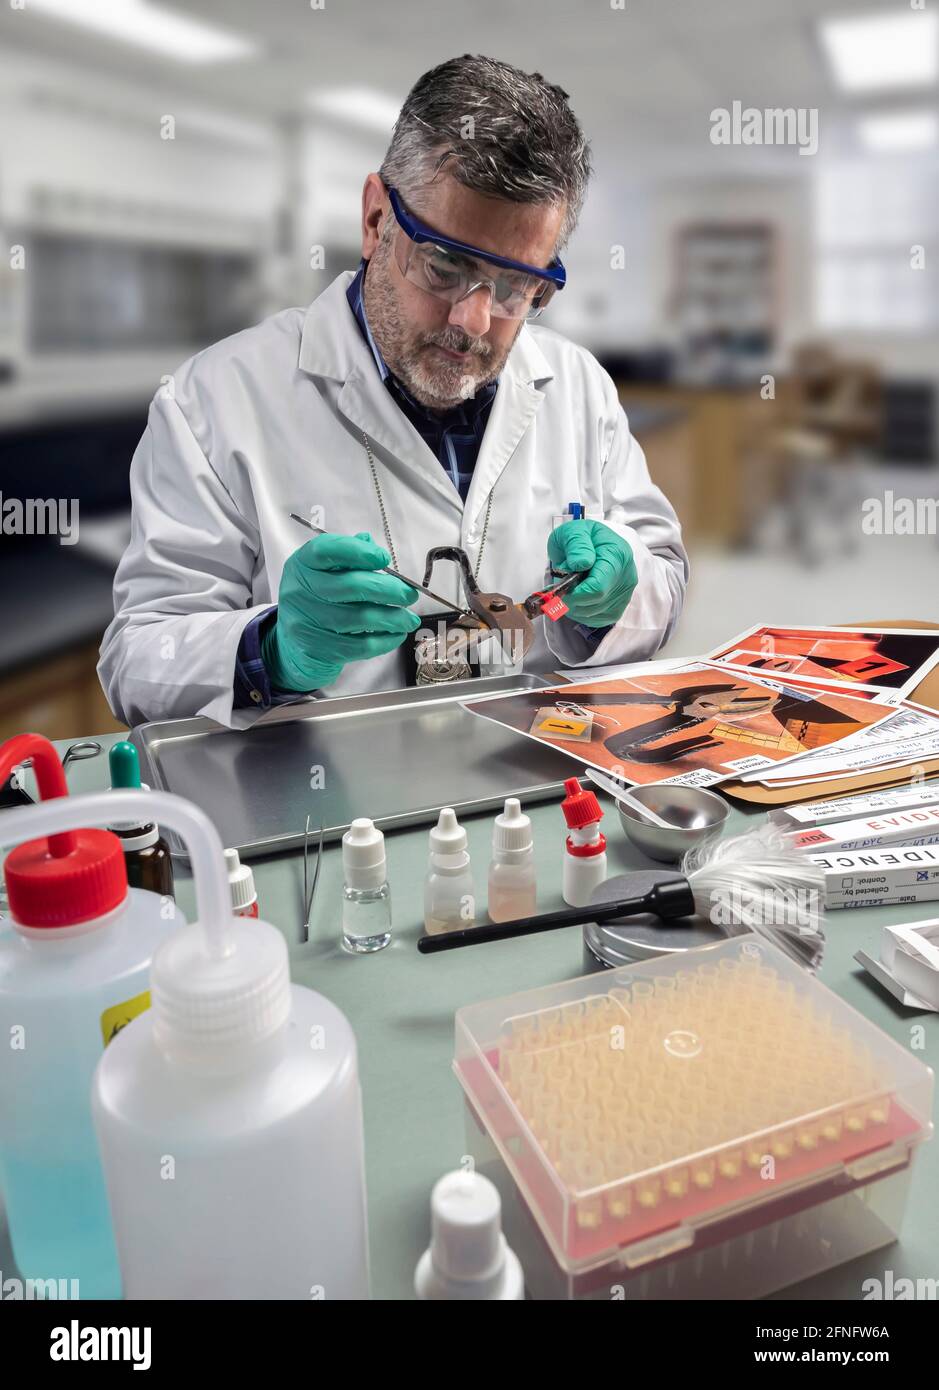 Un policier scientifique prélève des échantillons d'ADN sur des pinces à épiler dans un laboratoire de crime, image conceptuelle Banque D'Images